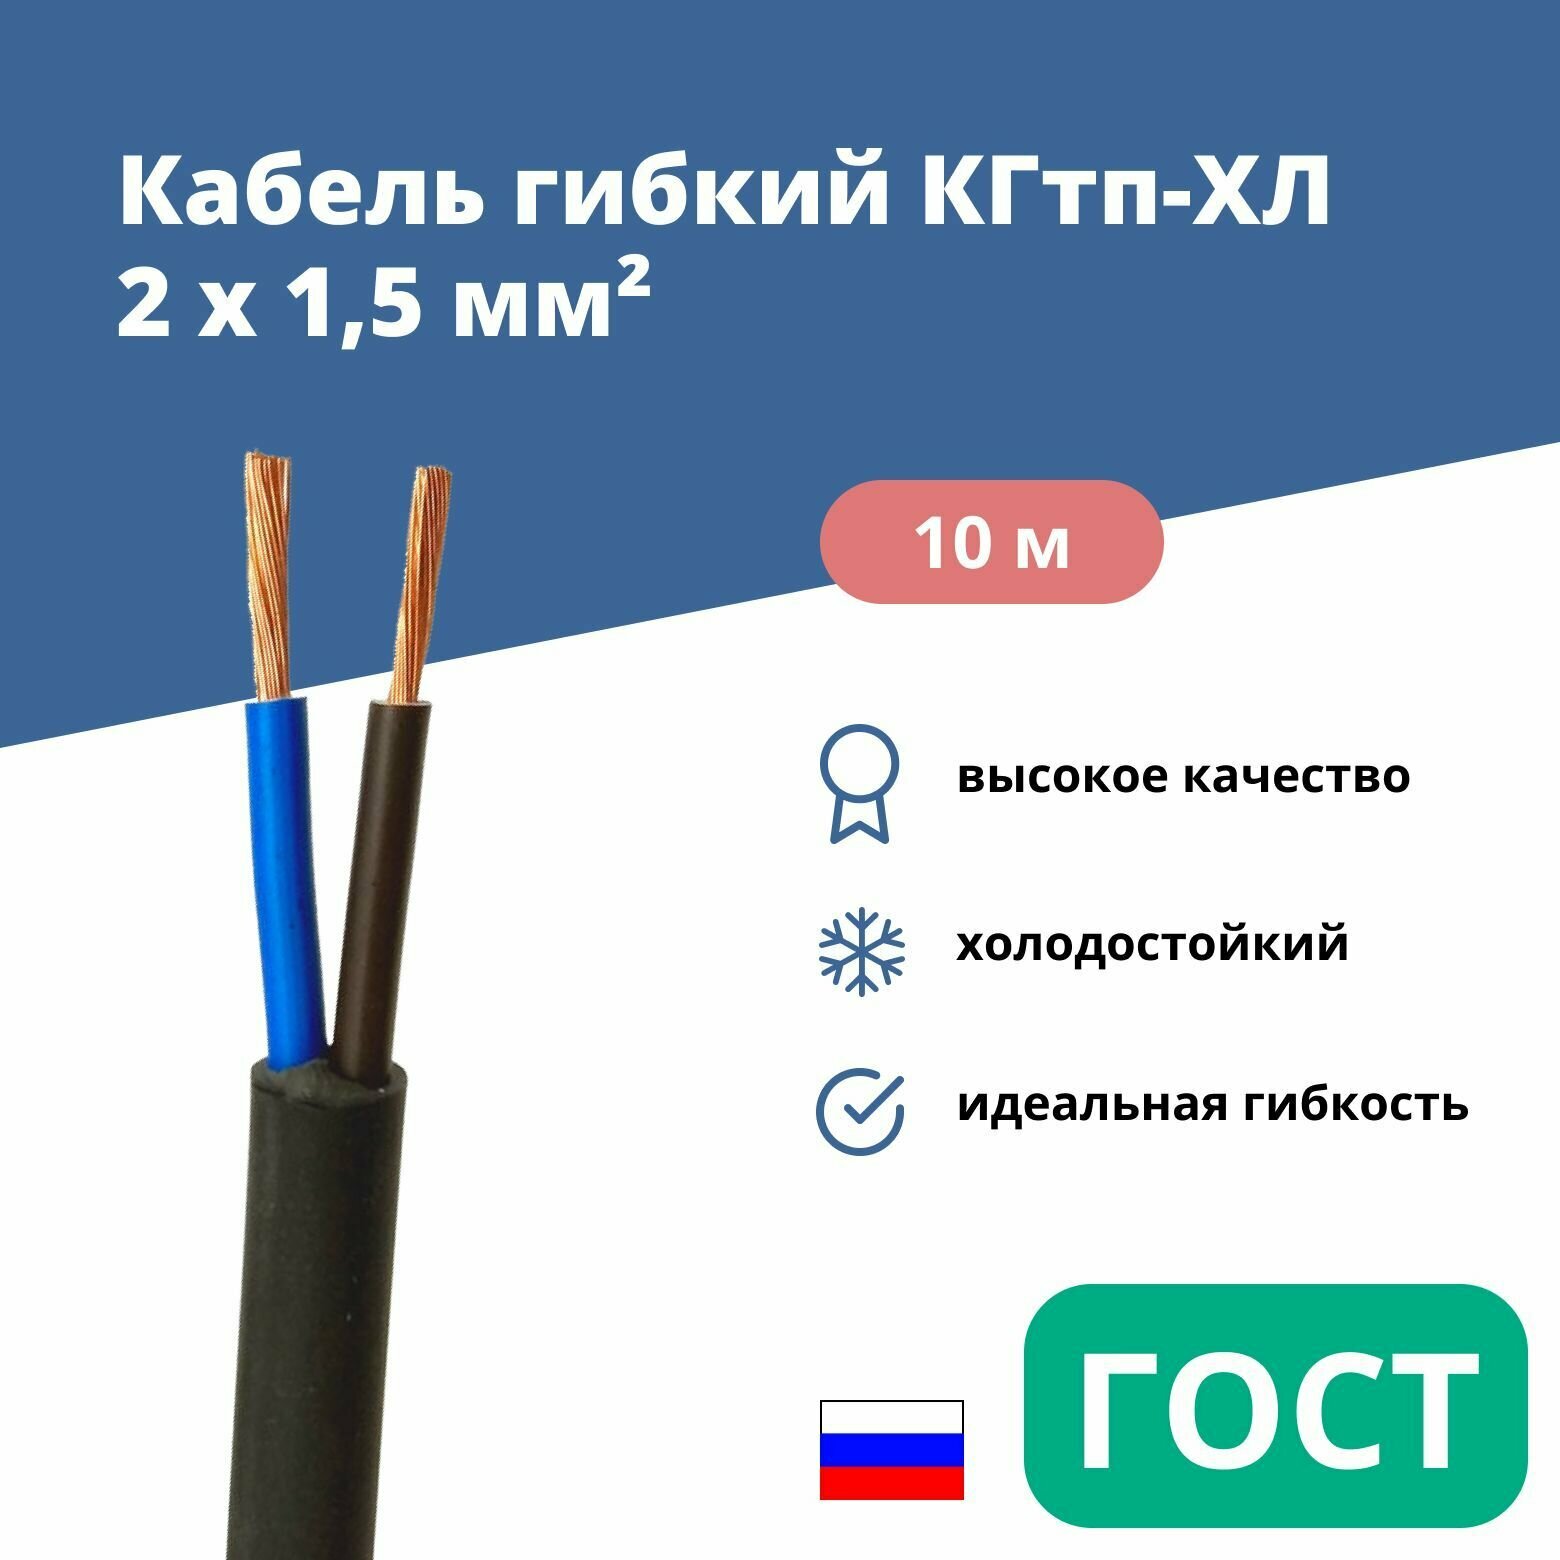 Силовой сварочный кабель гибкий кгтп-хл 2х1,5 уп. 10м.